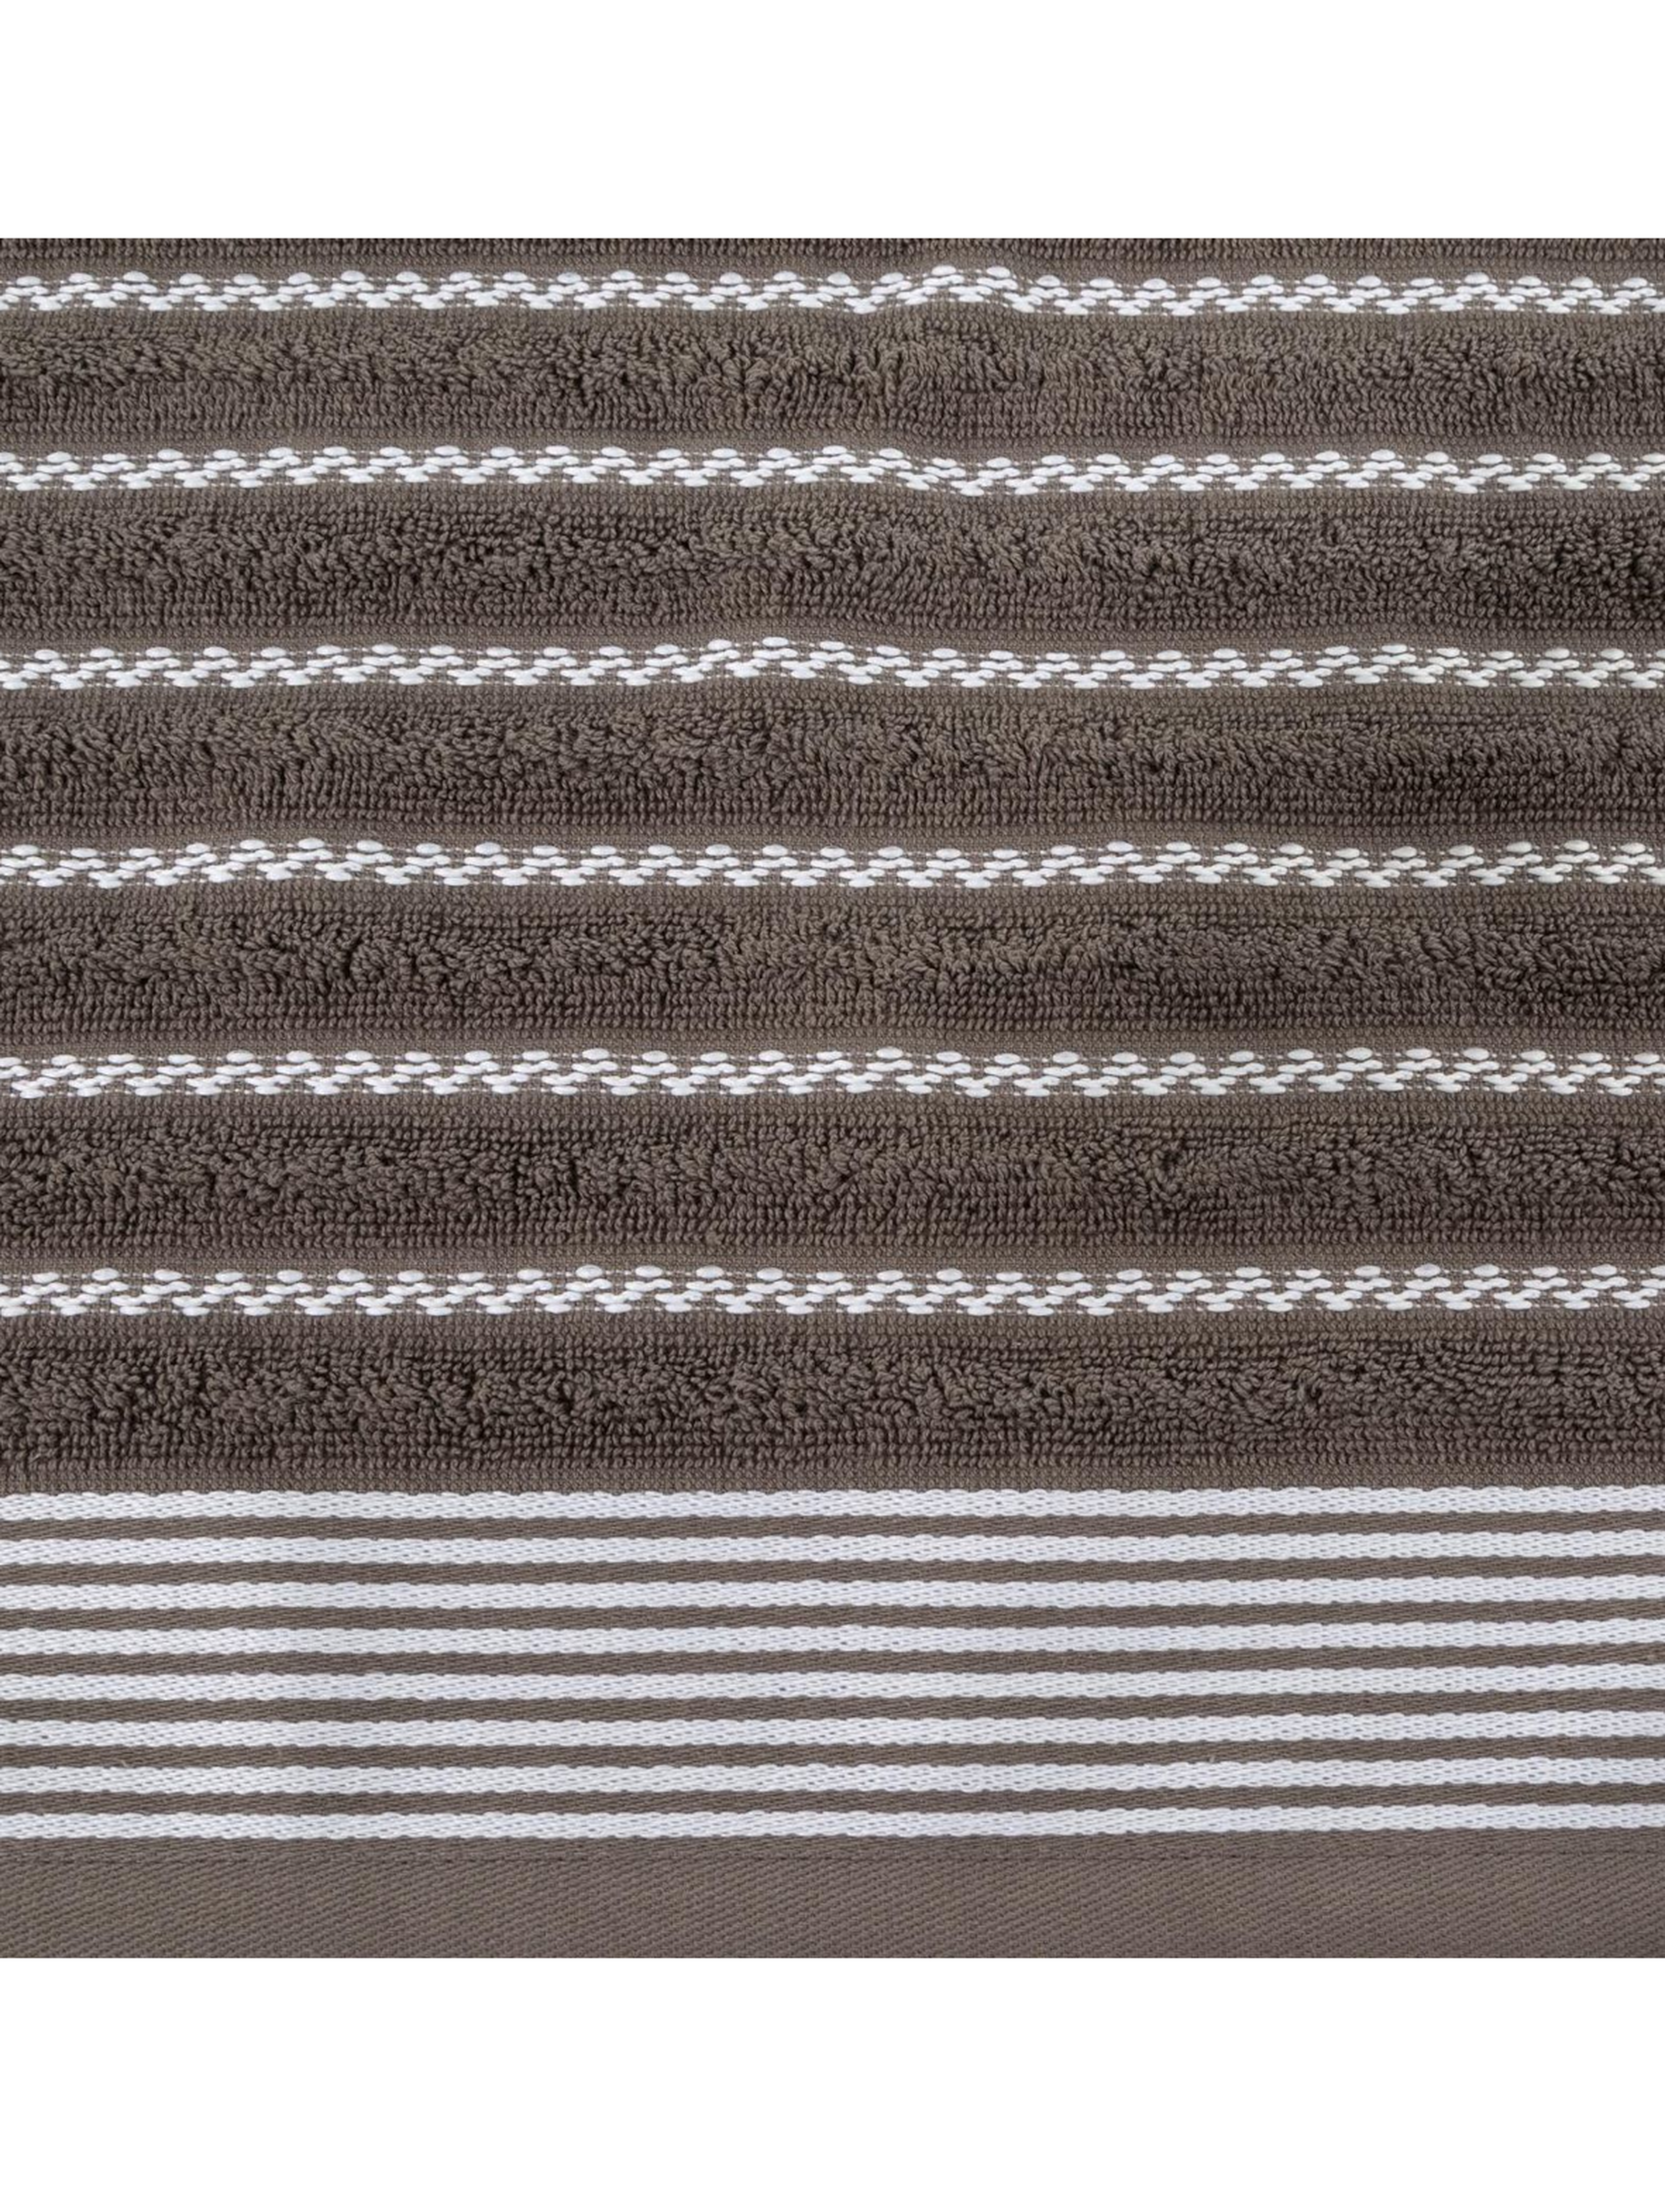 Ręcznik d91 leo (03) 50x90 cm ciemnobrązowy